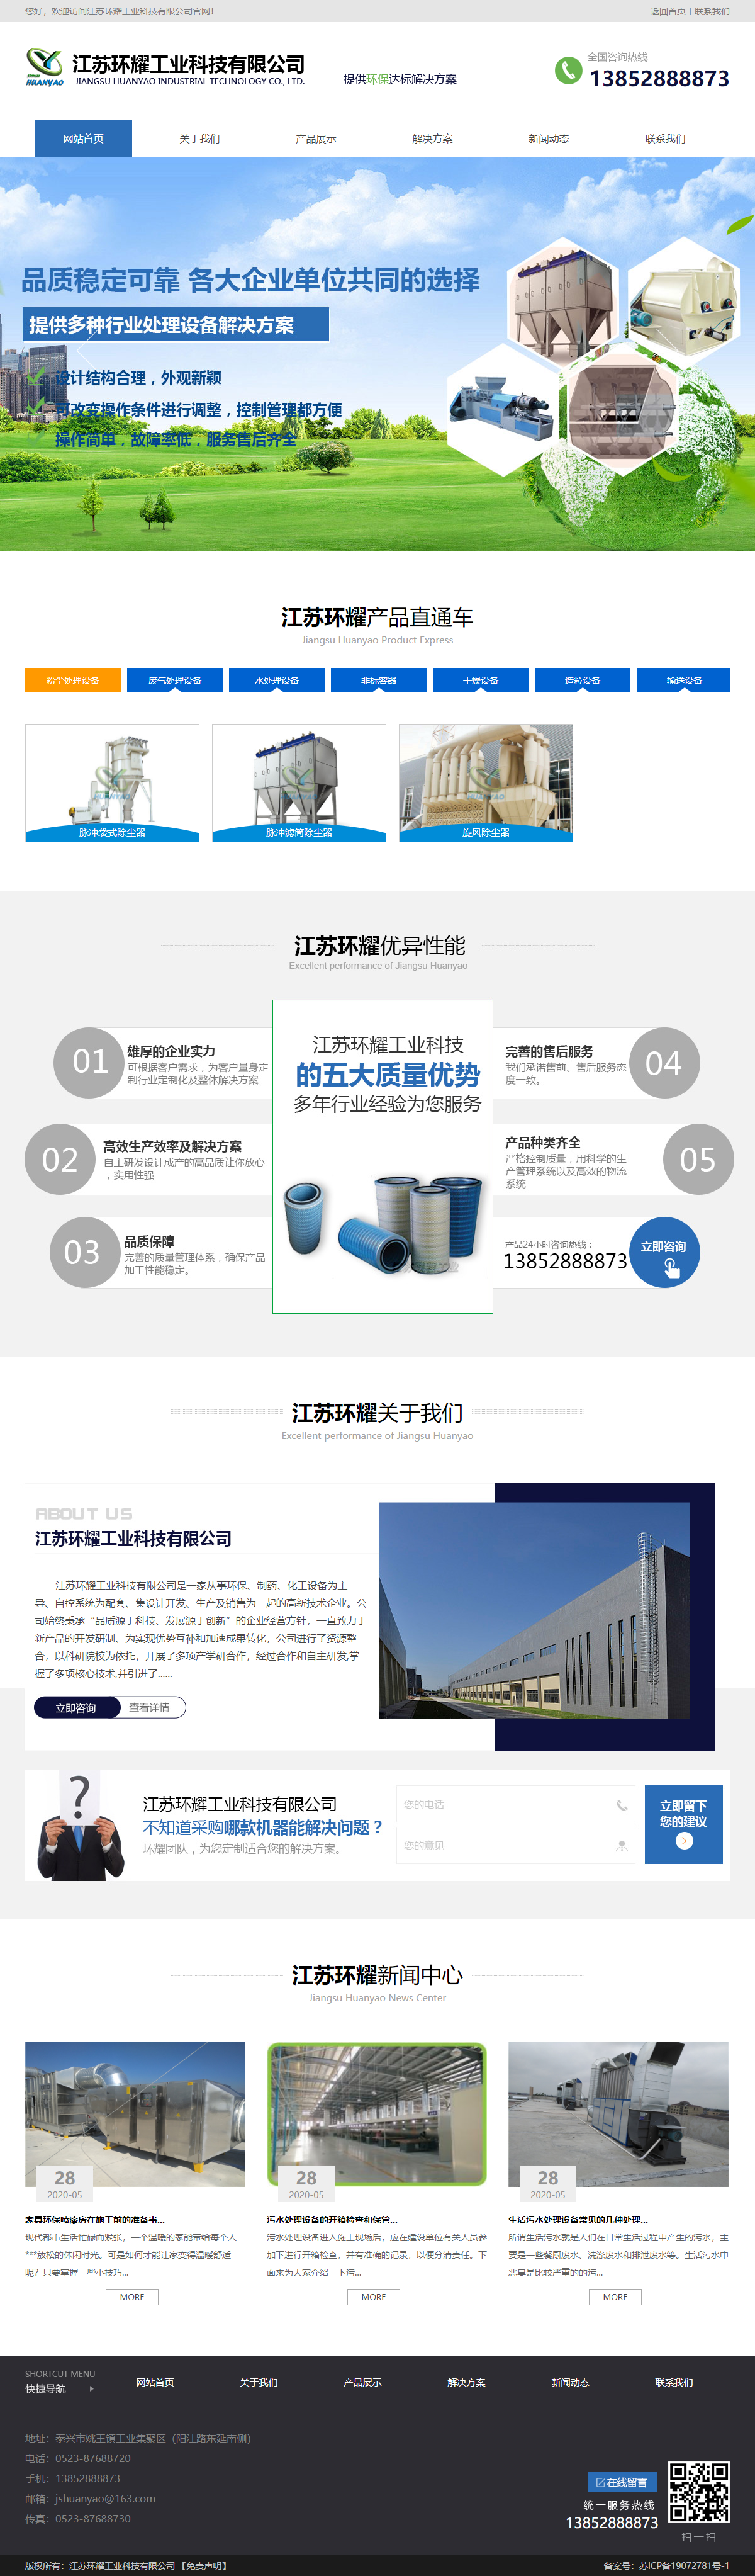 江苏环耀工业科技有限公司网站案例